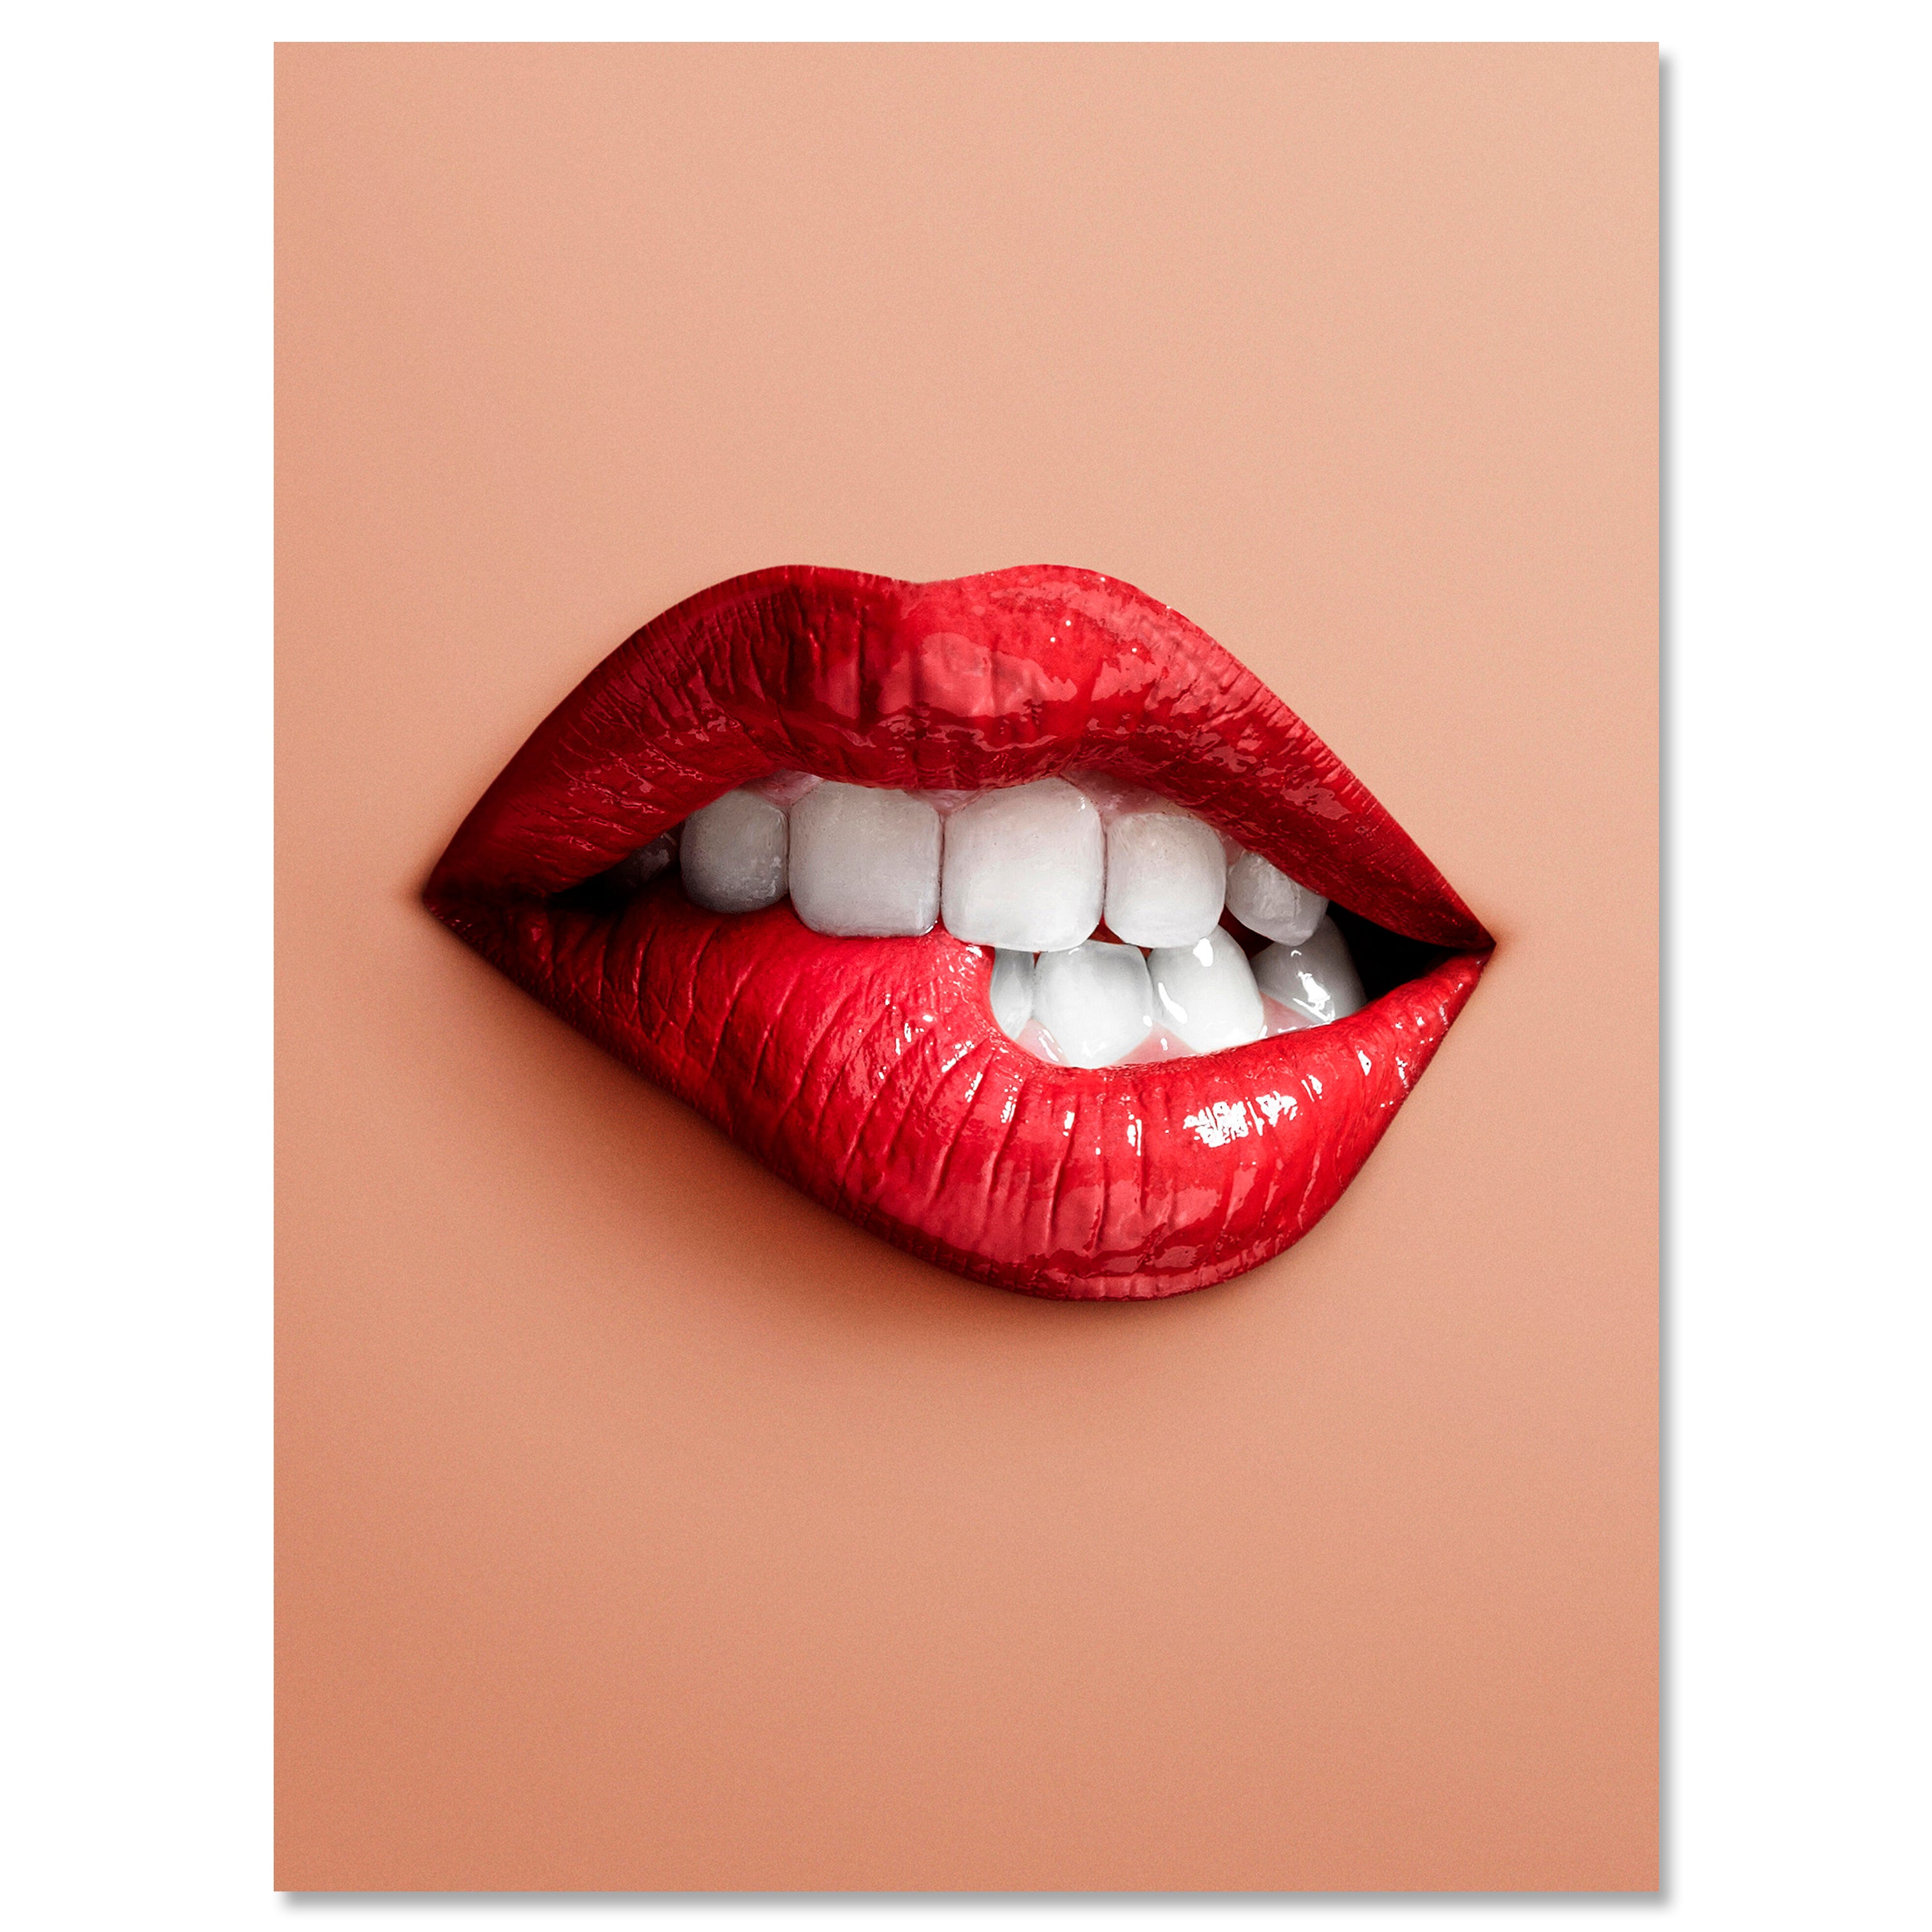 Leinwandbild Frauen Lippen M0078 kaufen - Bild 1